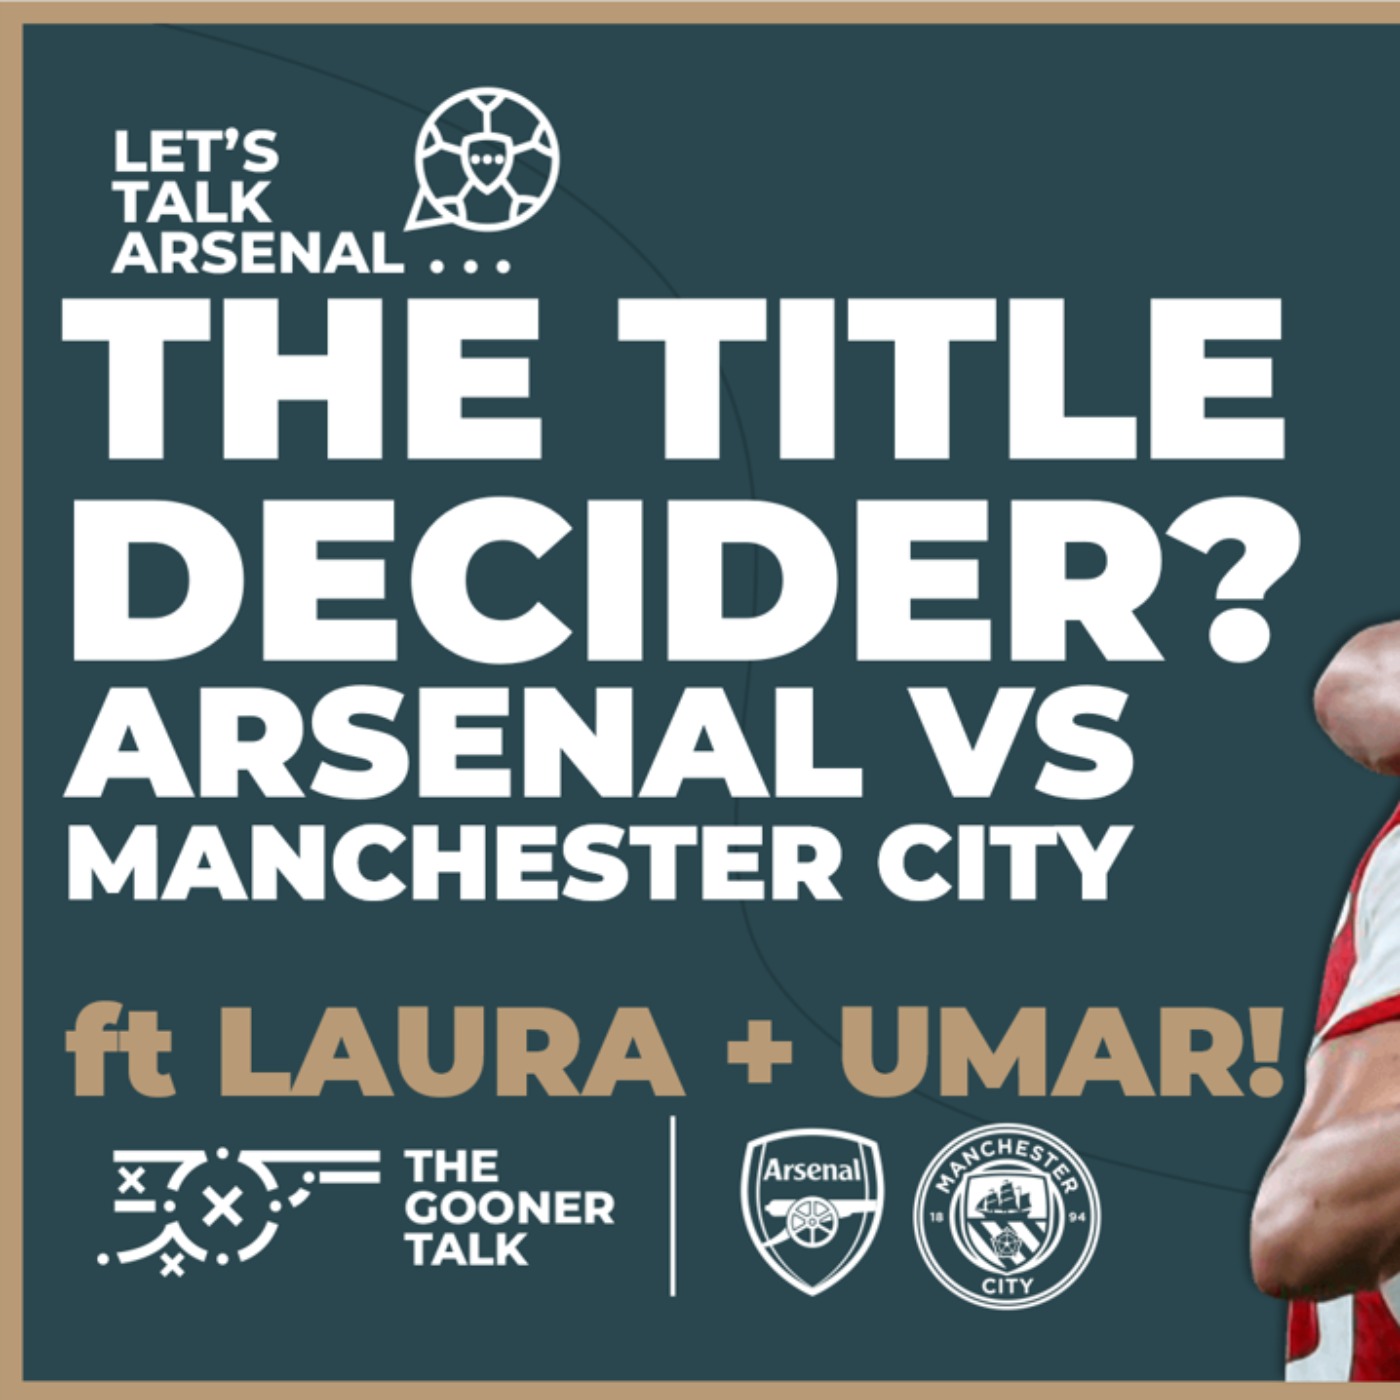 Manchester City vs Arsenal - The Premier League Title Decider? Ft Laura & Umar!